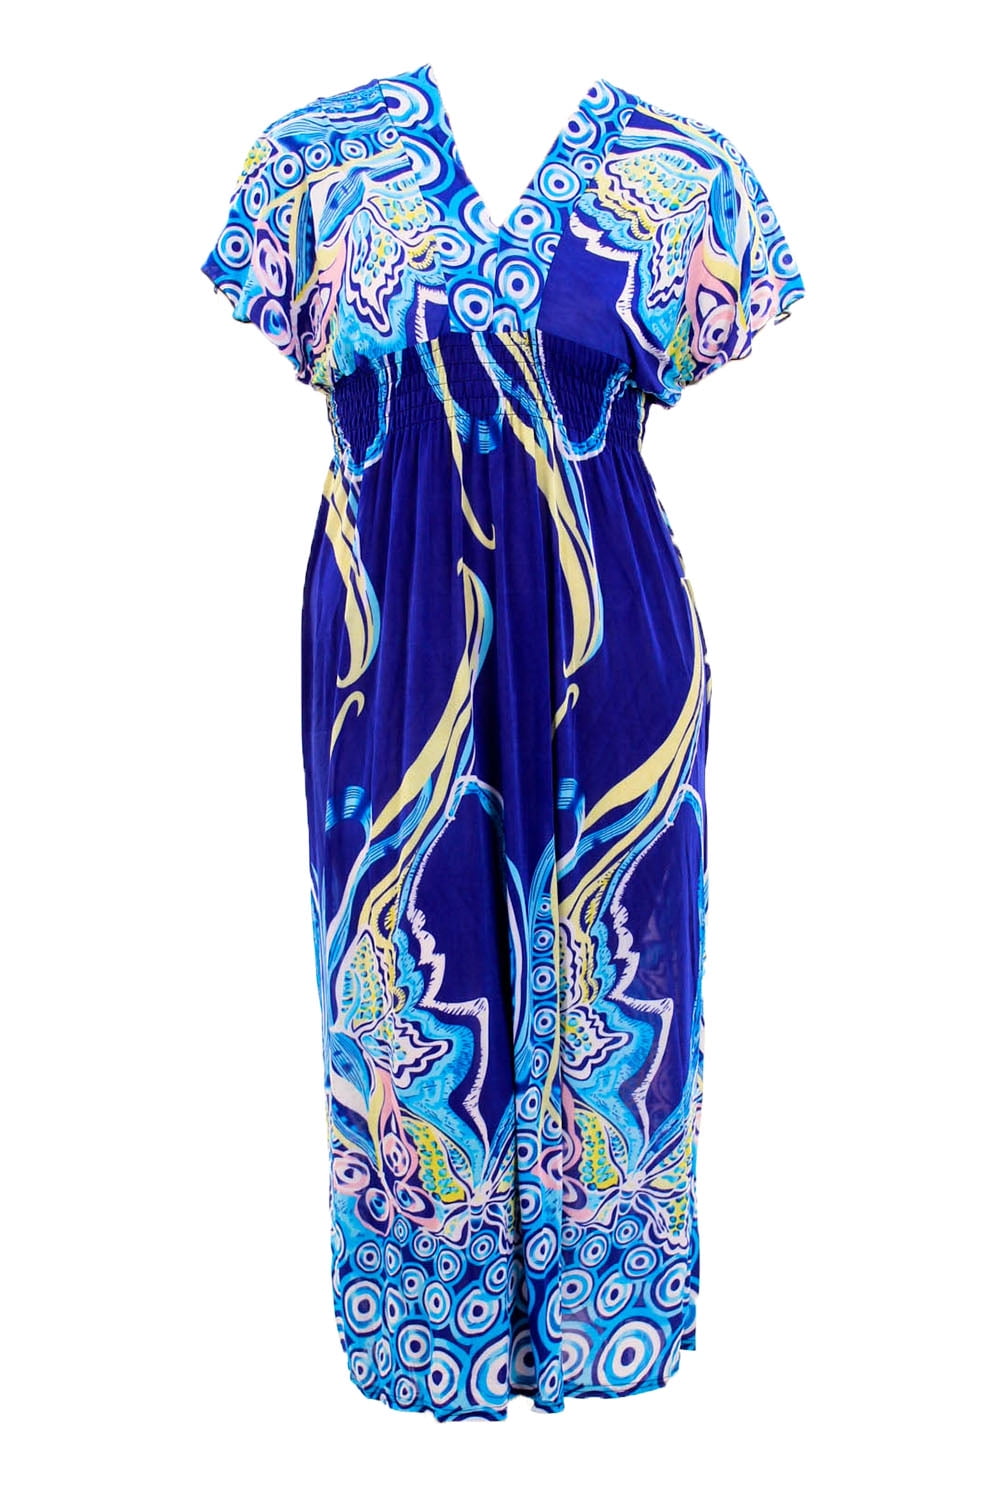 Hots Wing Women's Plus Size Boho Printed Long Maxi Dress